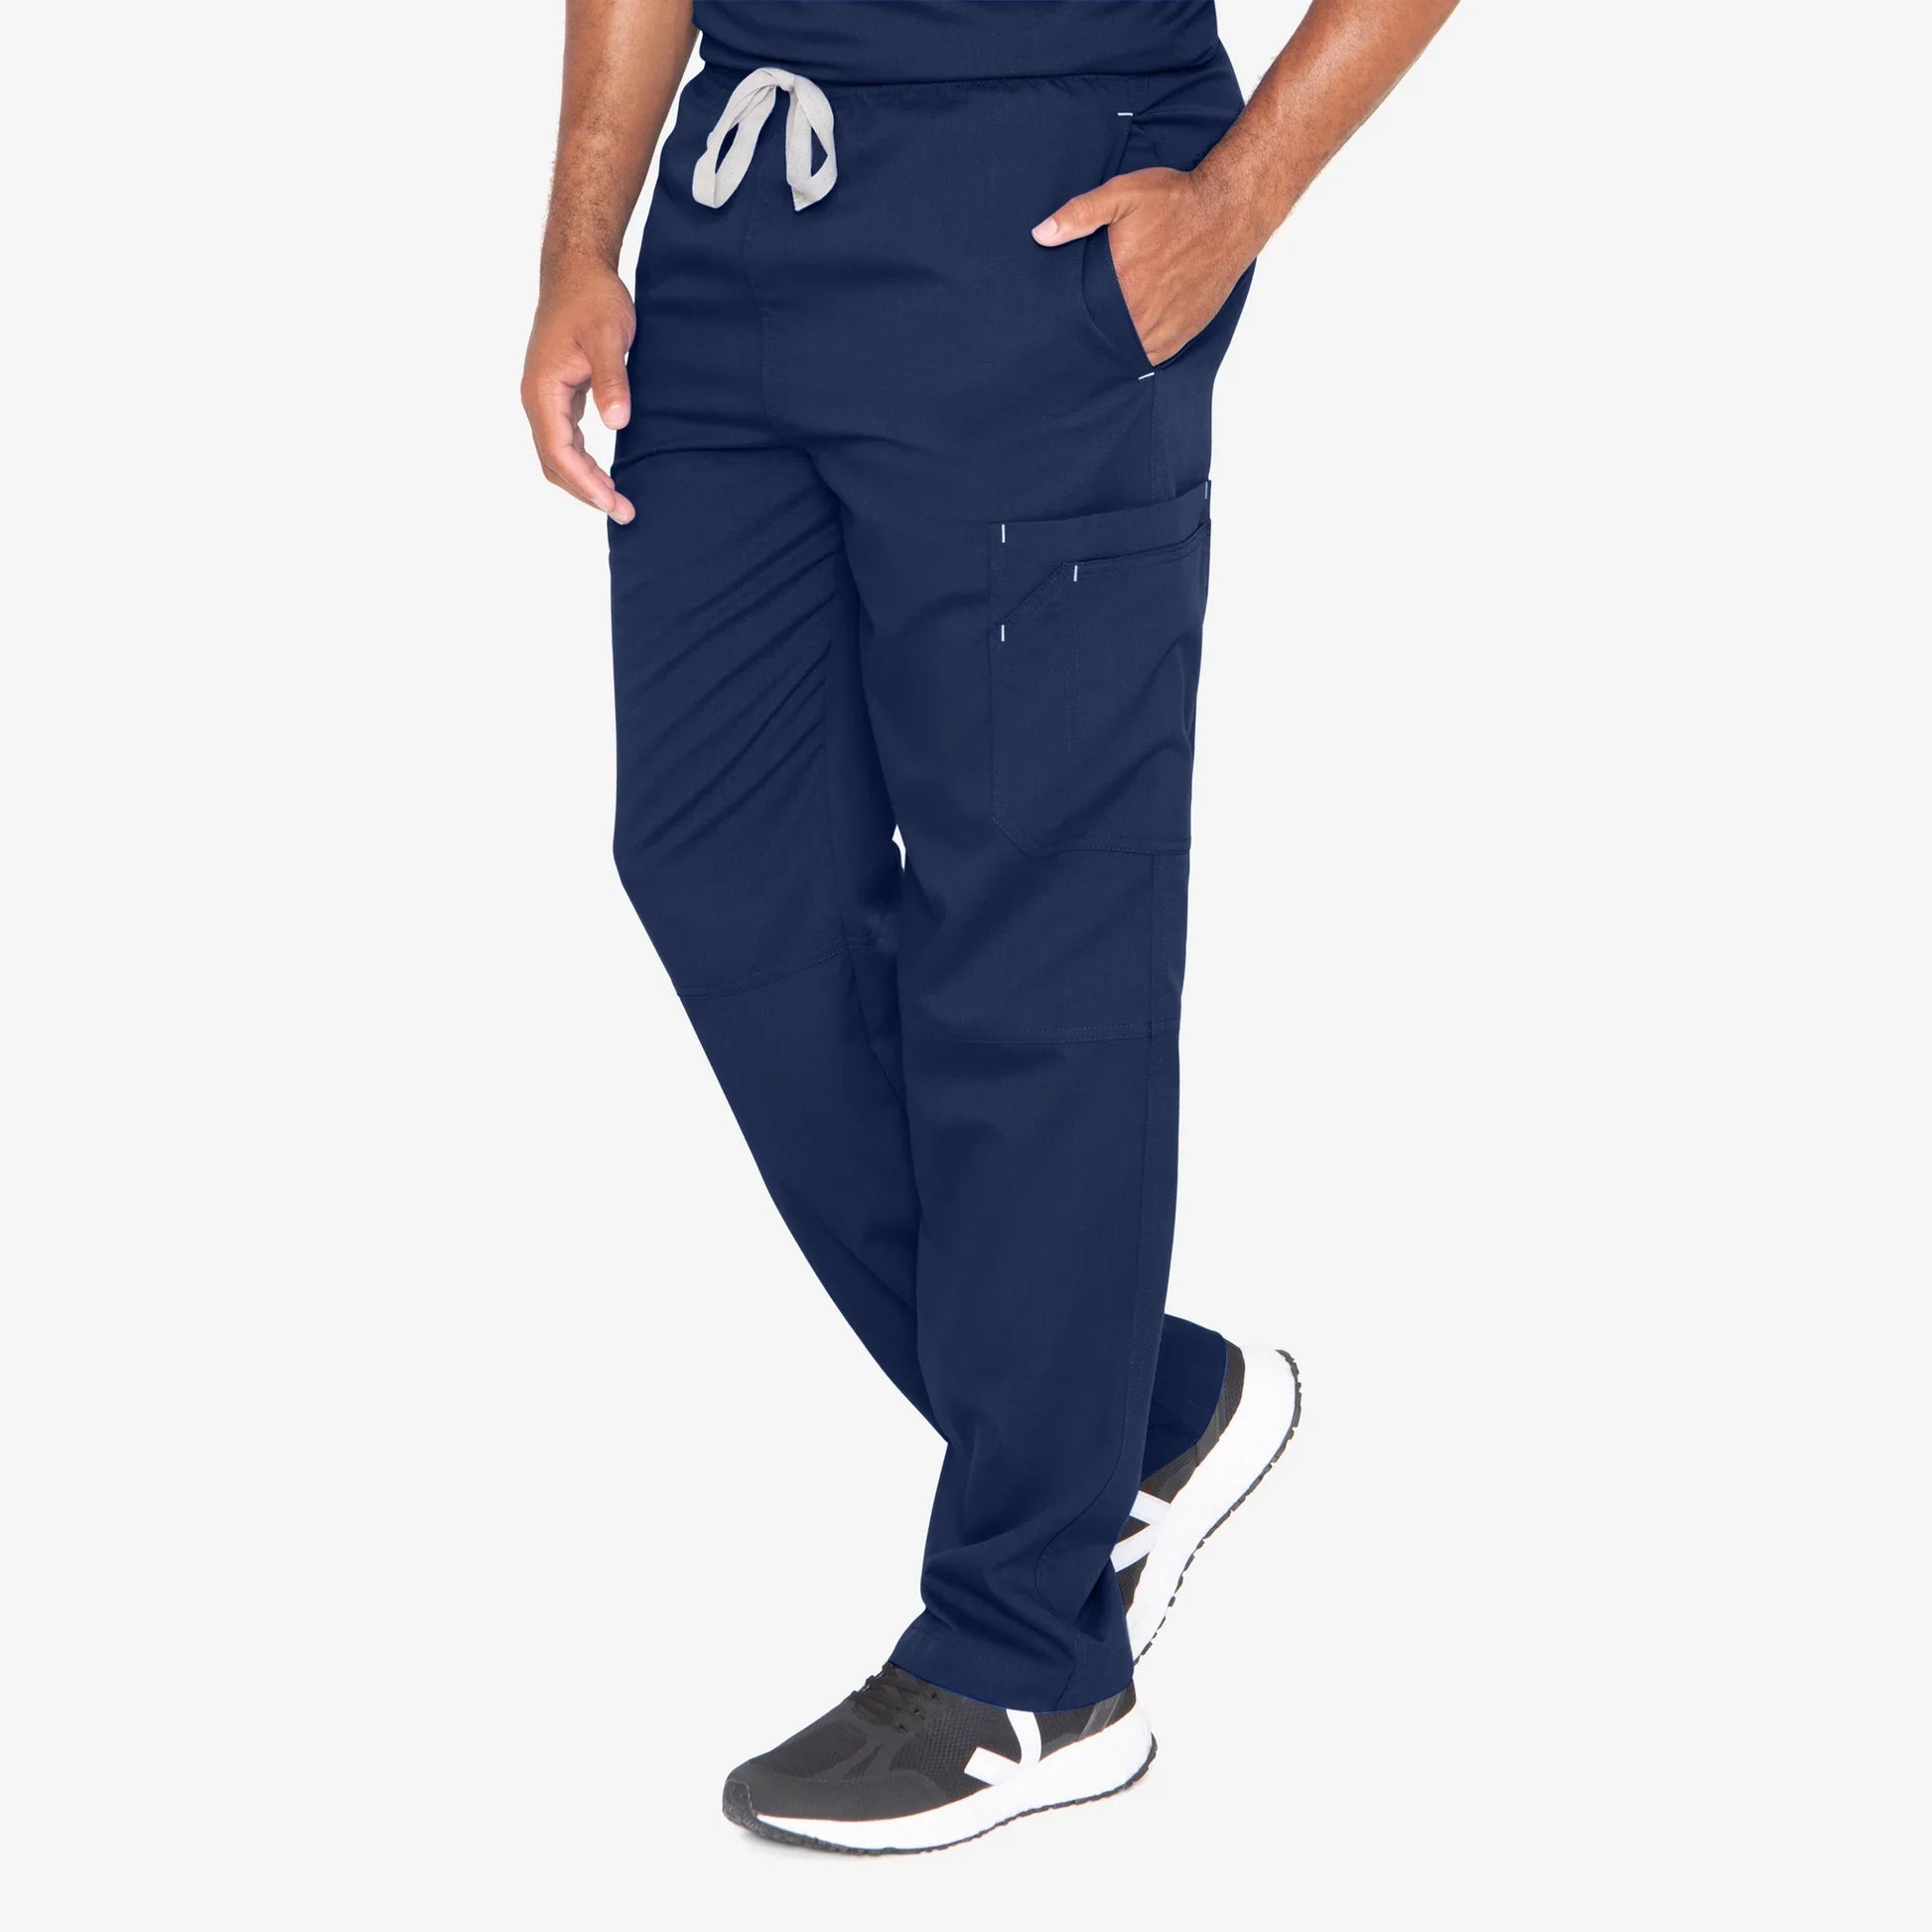 Grey's Anatomy Preston Pant - Men's 6 Pocket Scrub Pant Tall Men's Tall Scrub Pant Grey's Anatomy Classic Navy XS 